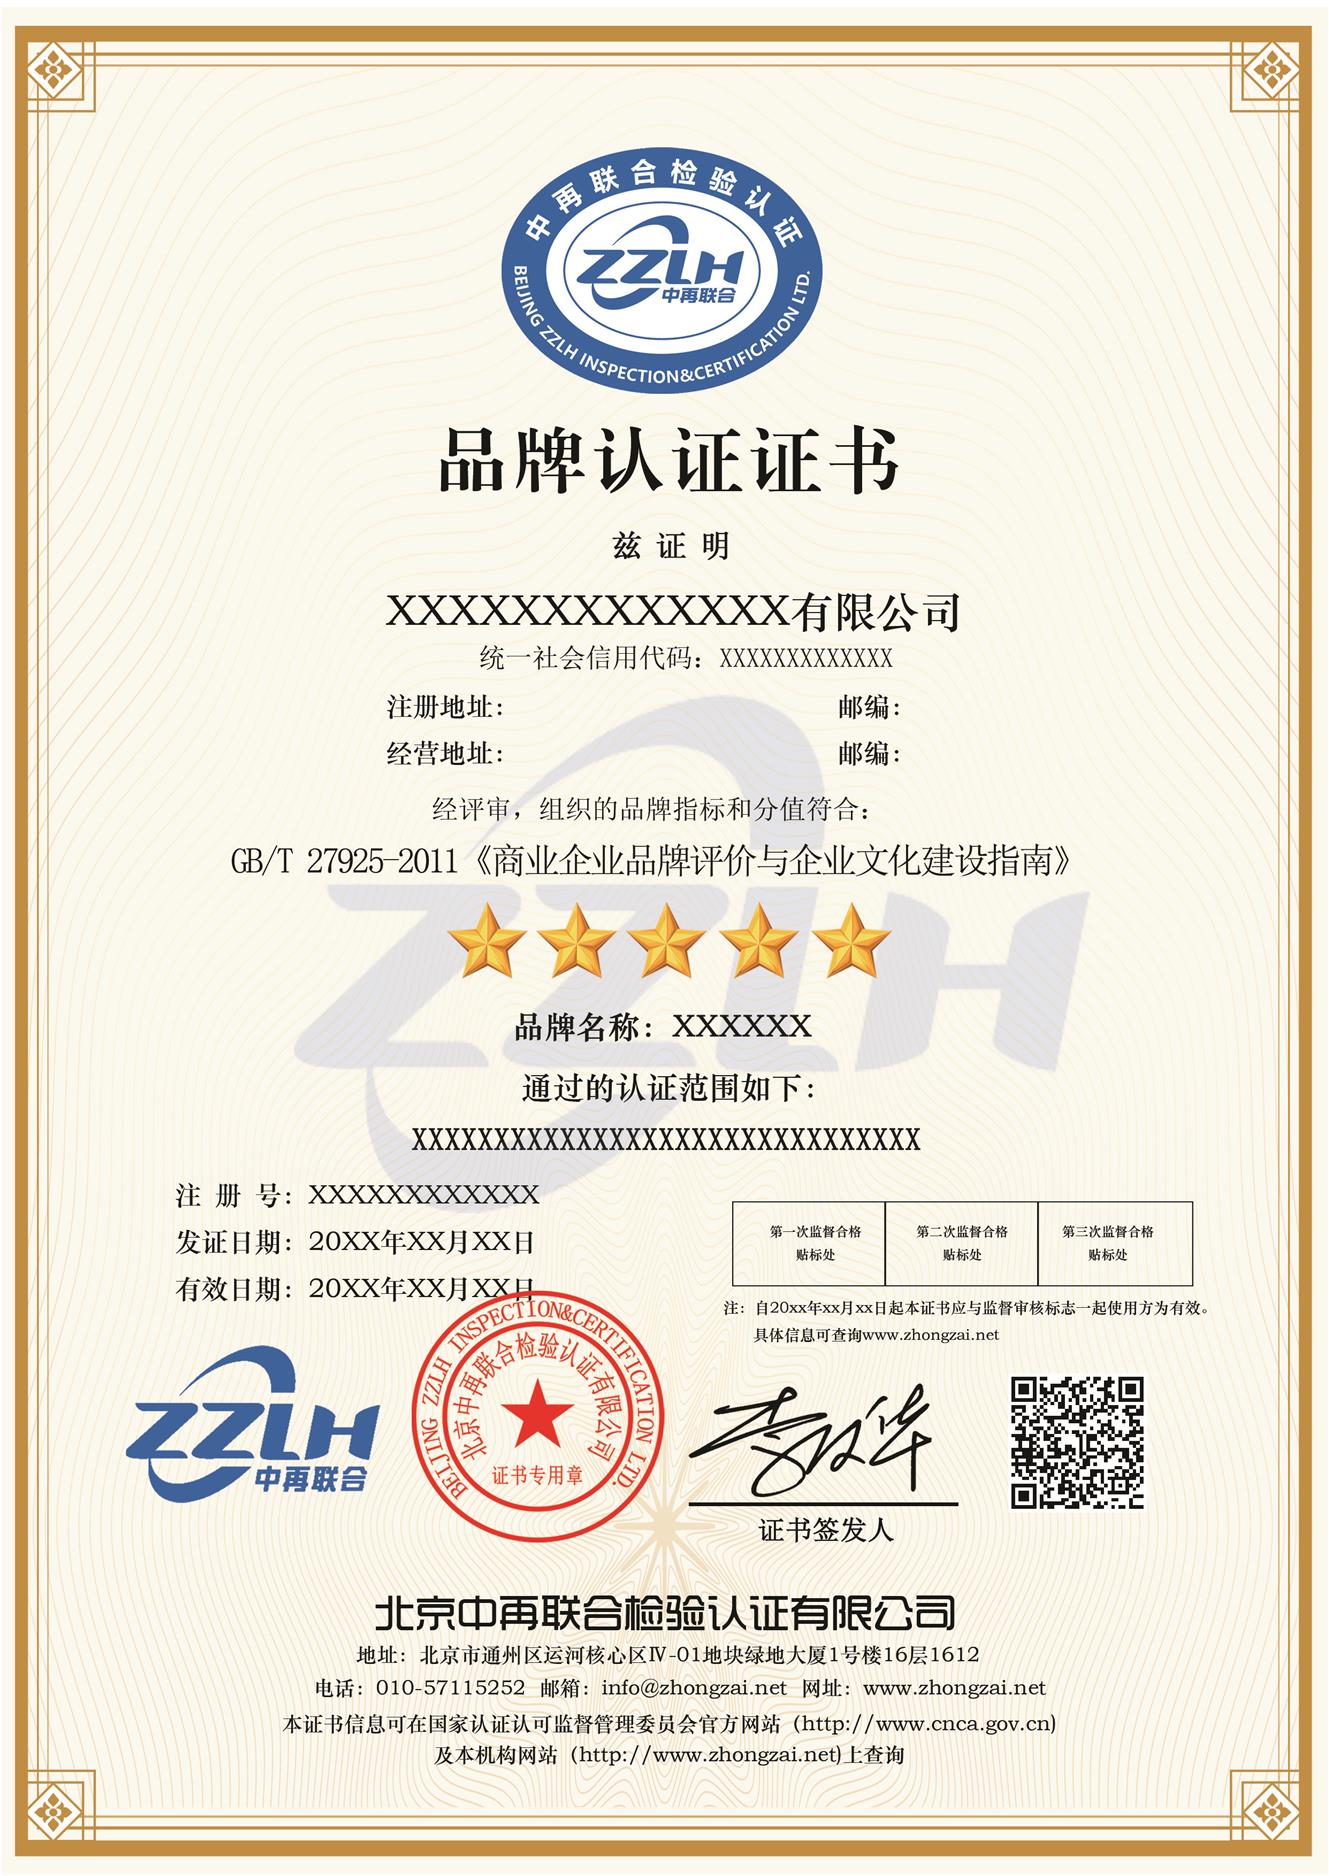 补贴申报 铜川品牌星级认证GB/T27925-2011